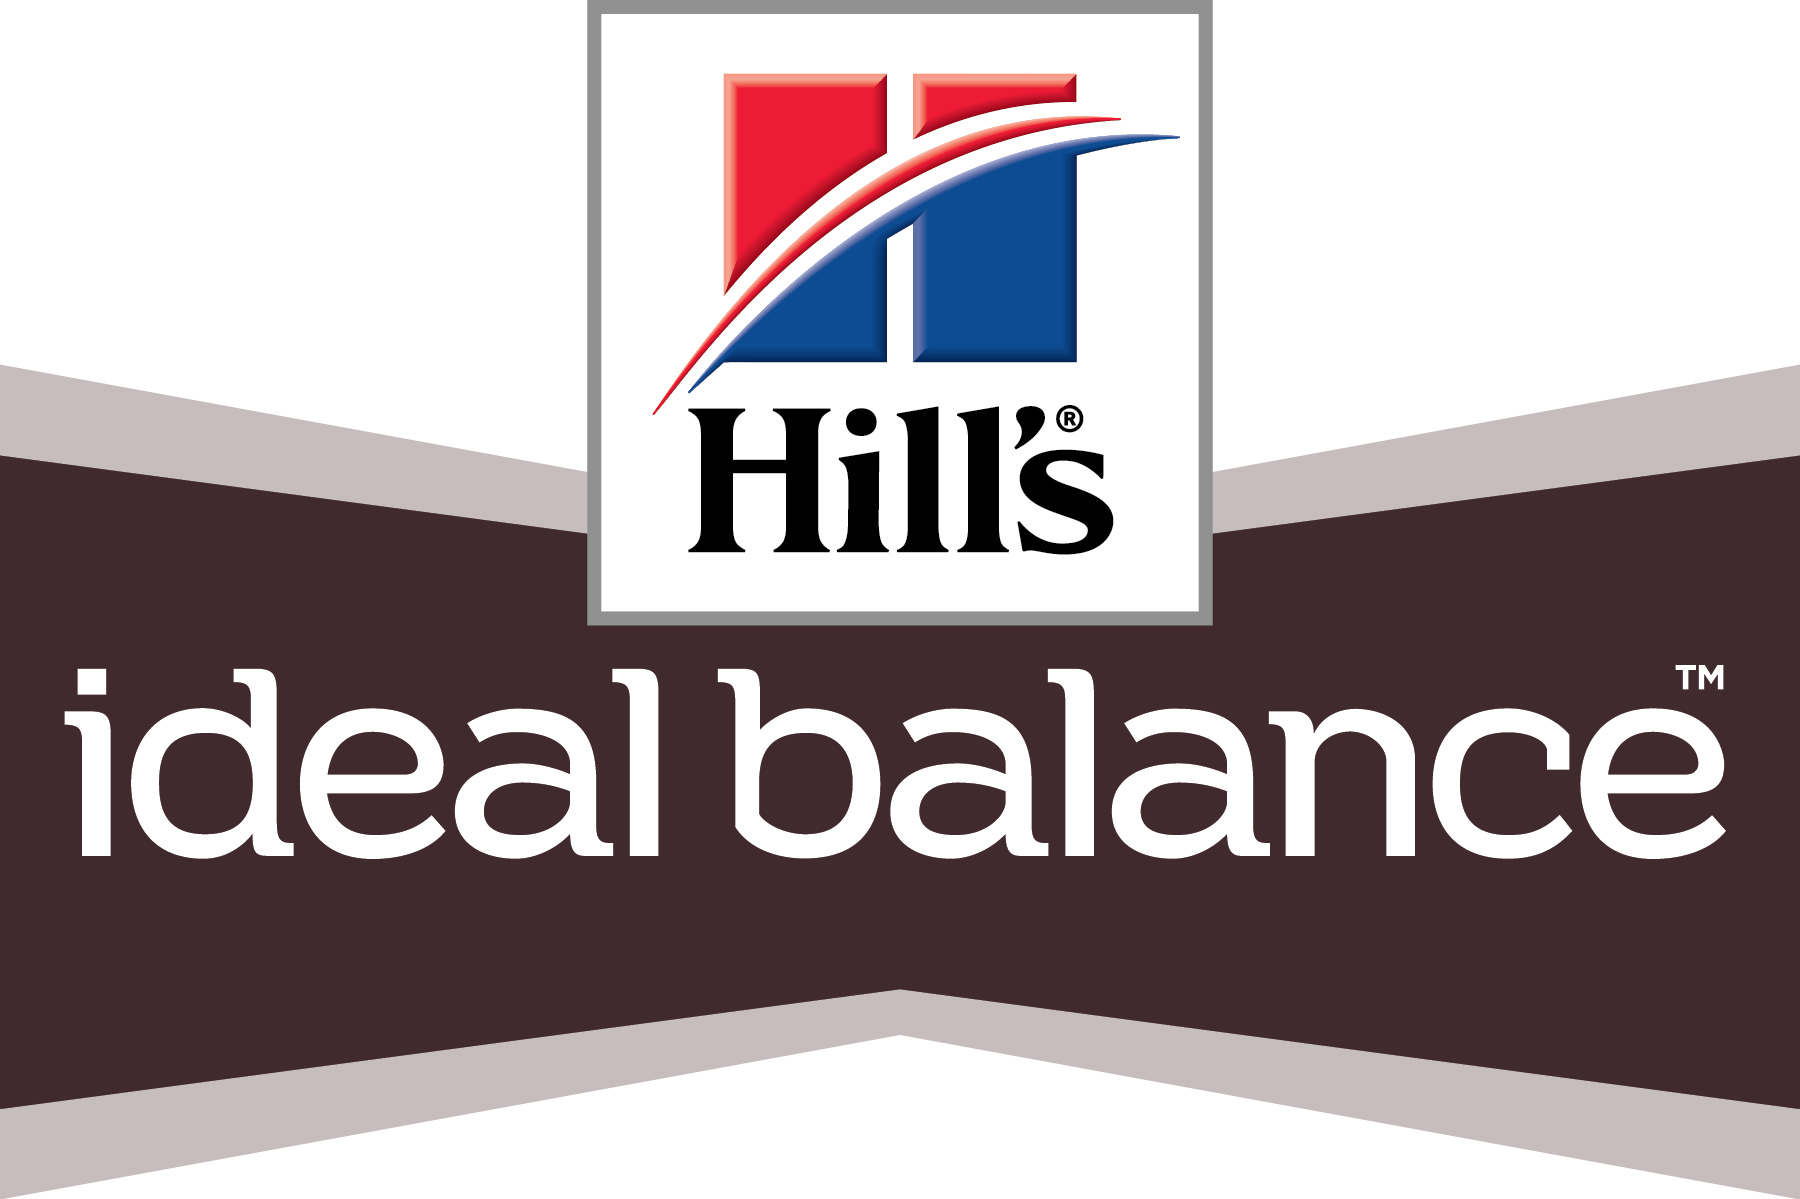 Hills Ideal Balance